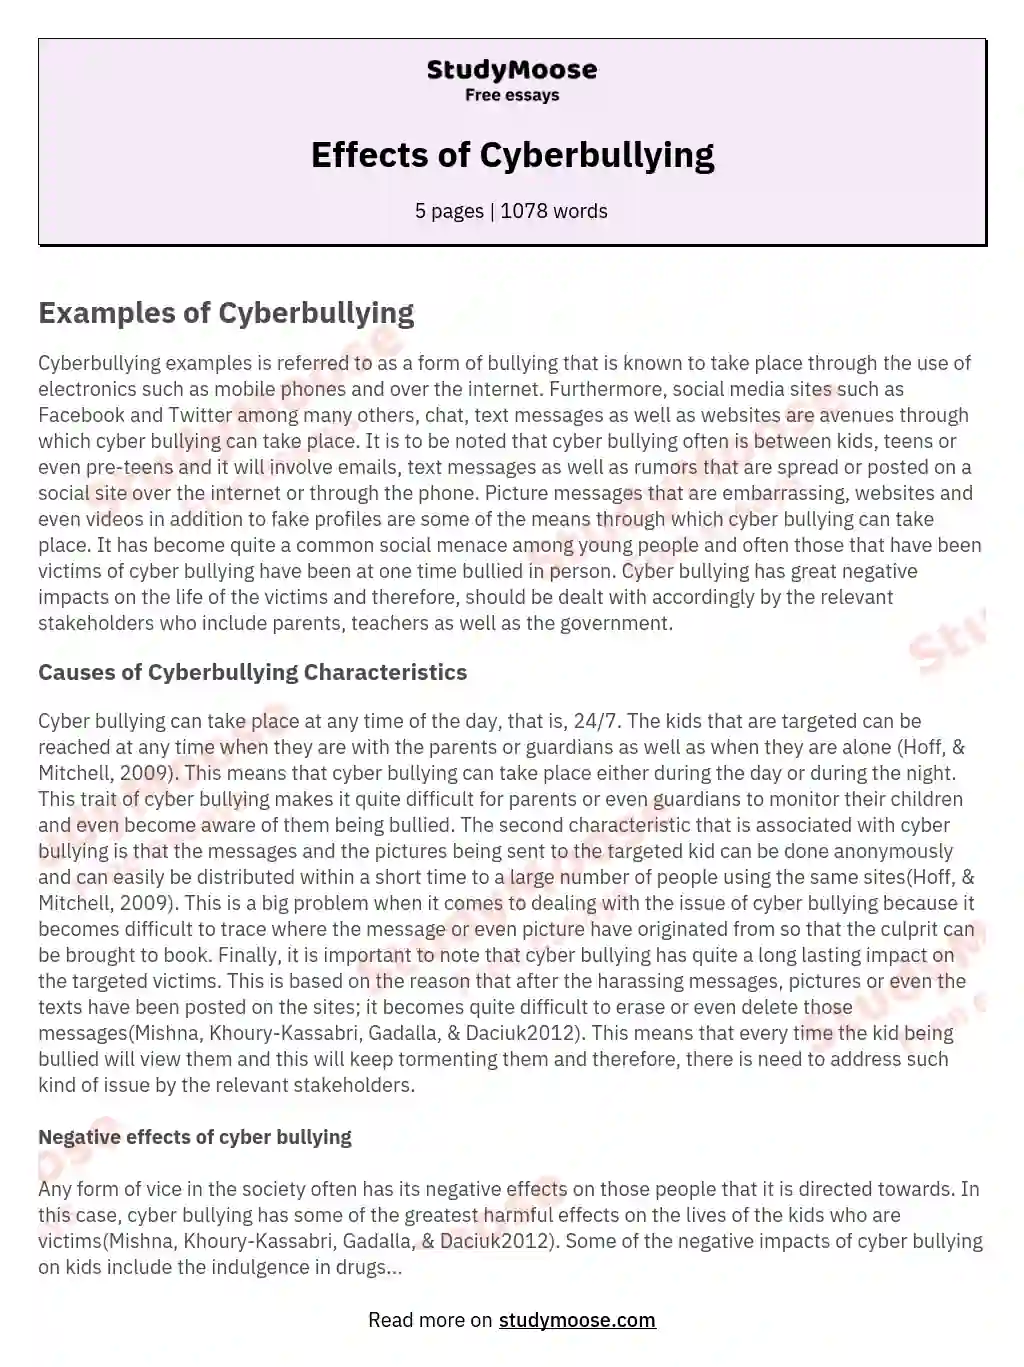 Effects of Cyberbullying essay